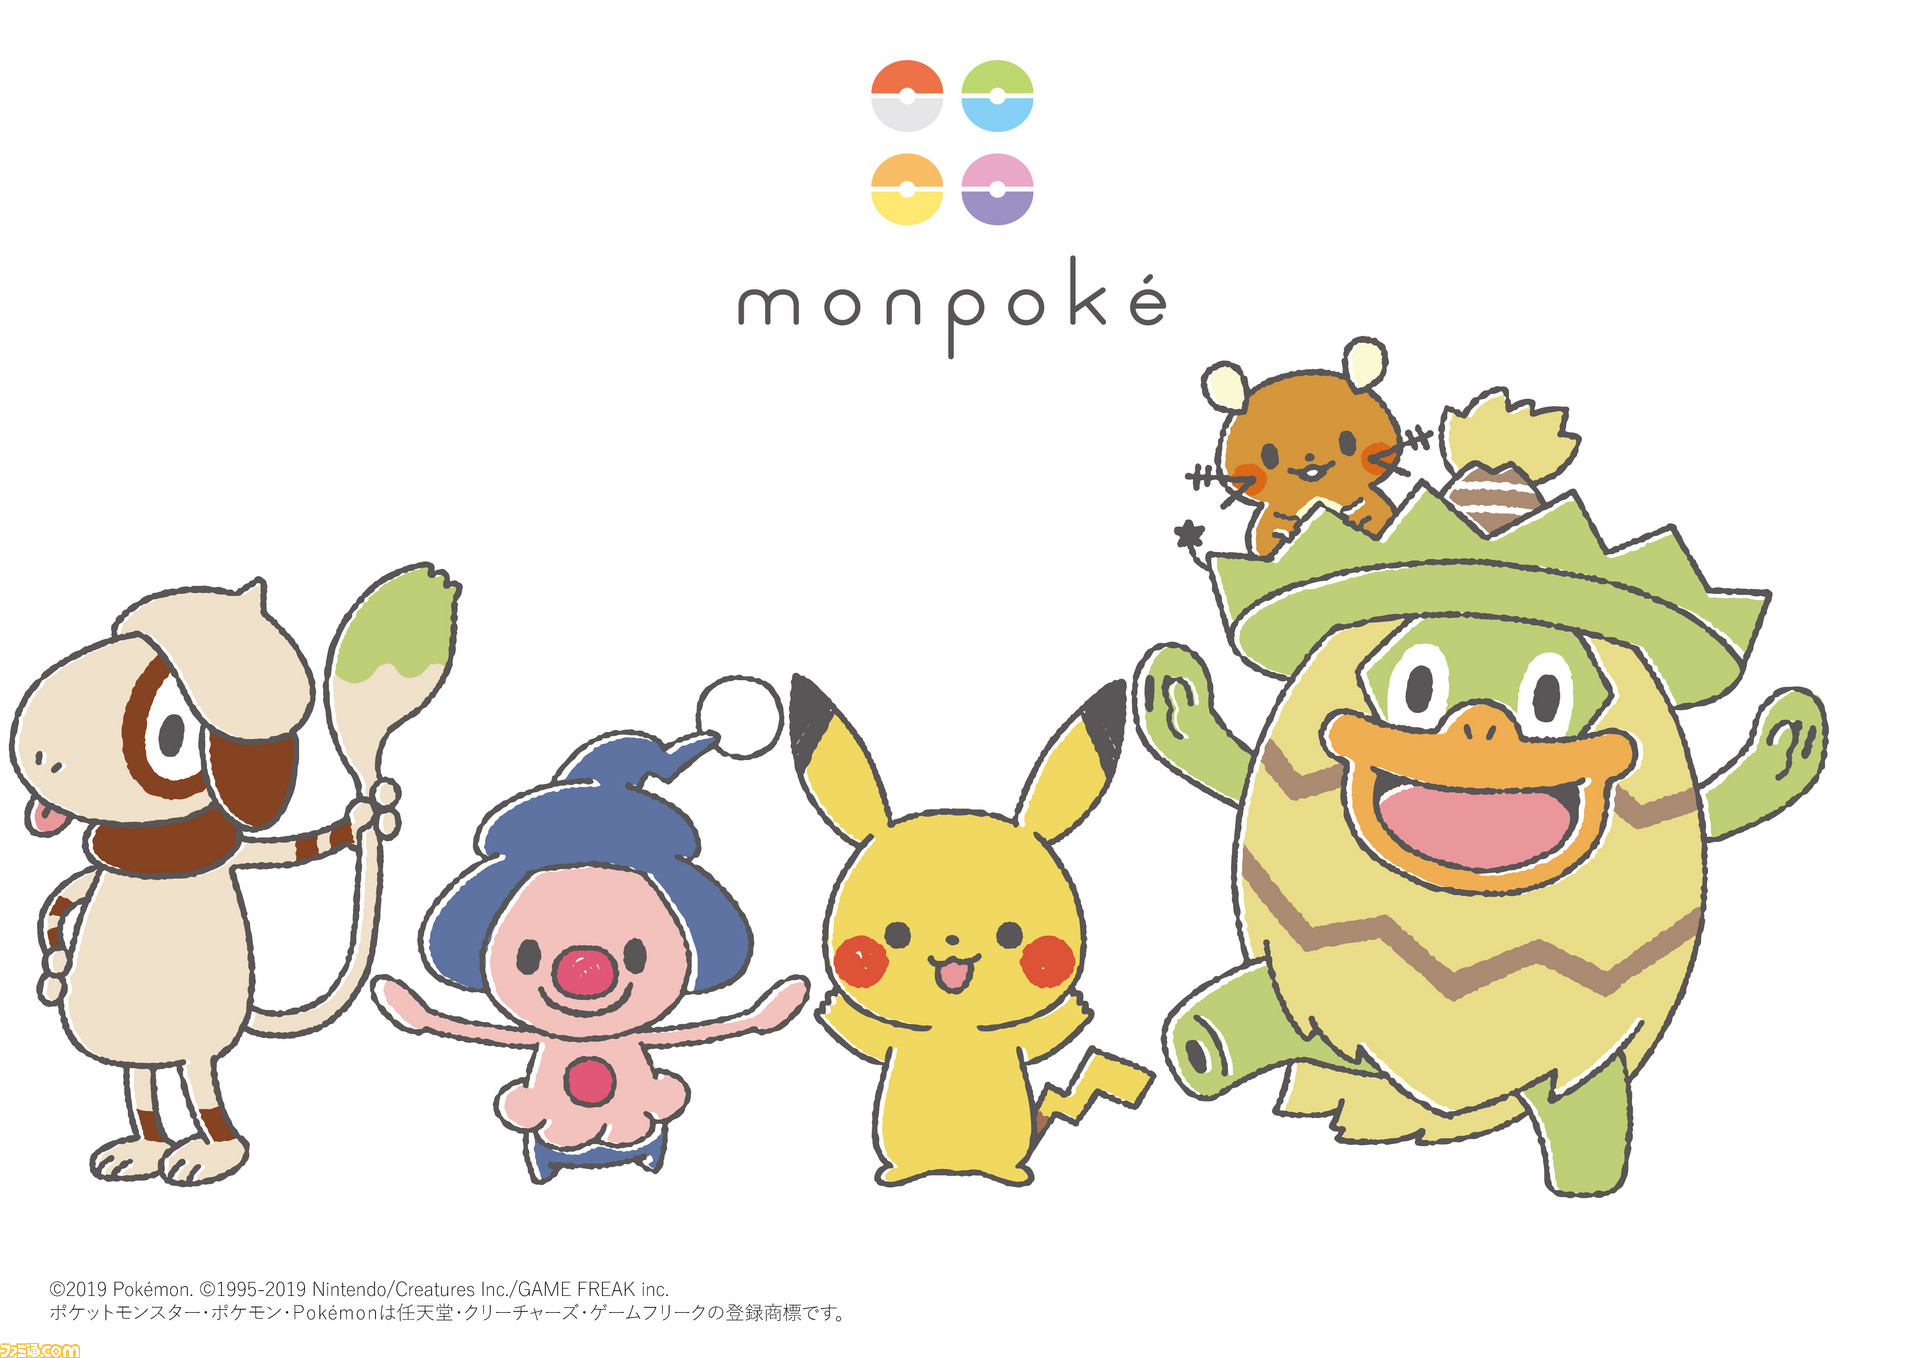 ポケモン 初の公式ベビーブランド Monpoke モンポケ 誕生 新世代のママやパパに向けて親子で使えるデザインや品質で展開 ファミ通 Com